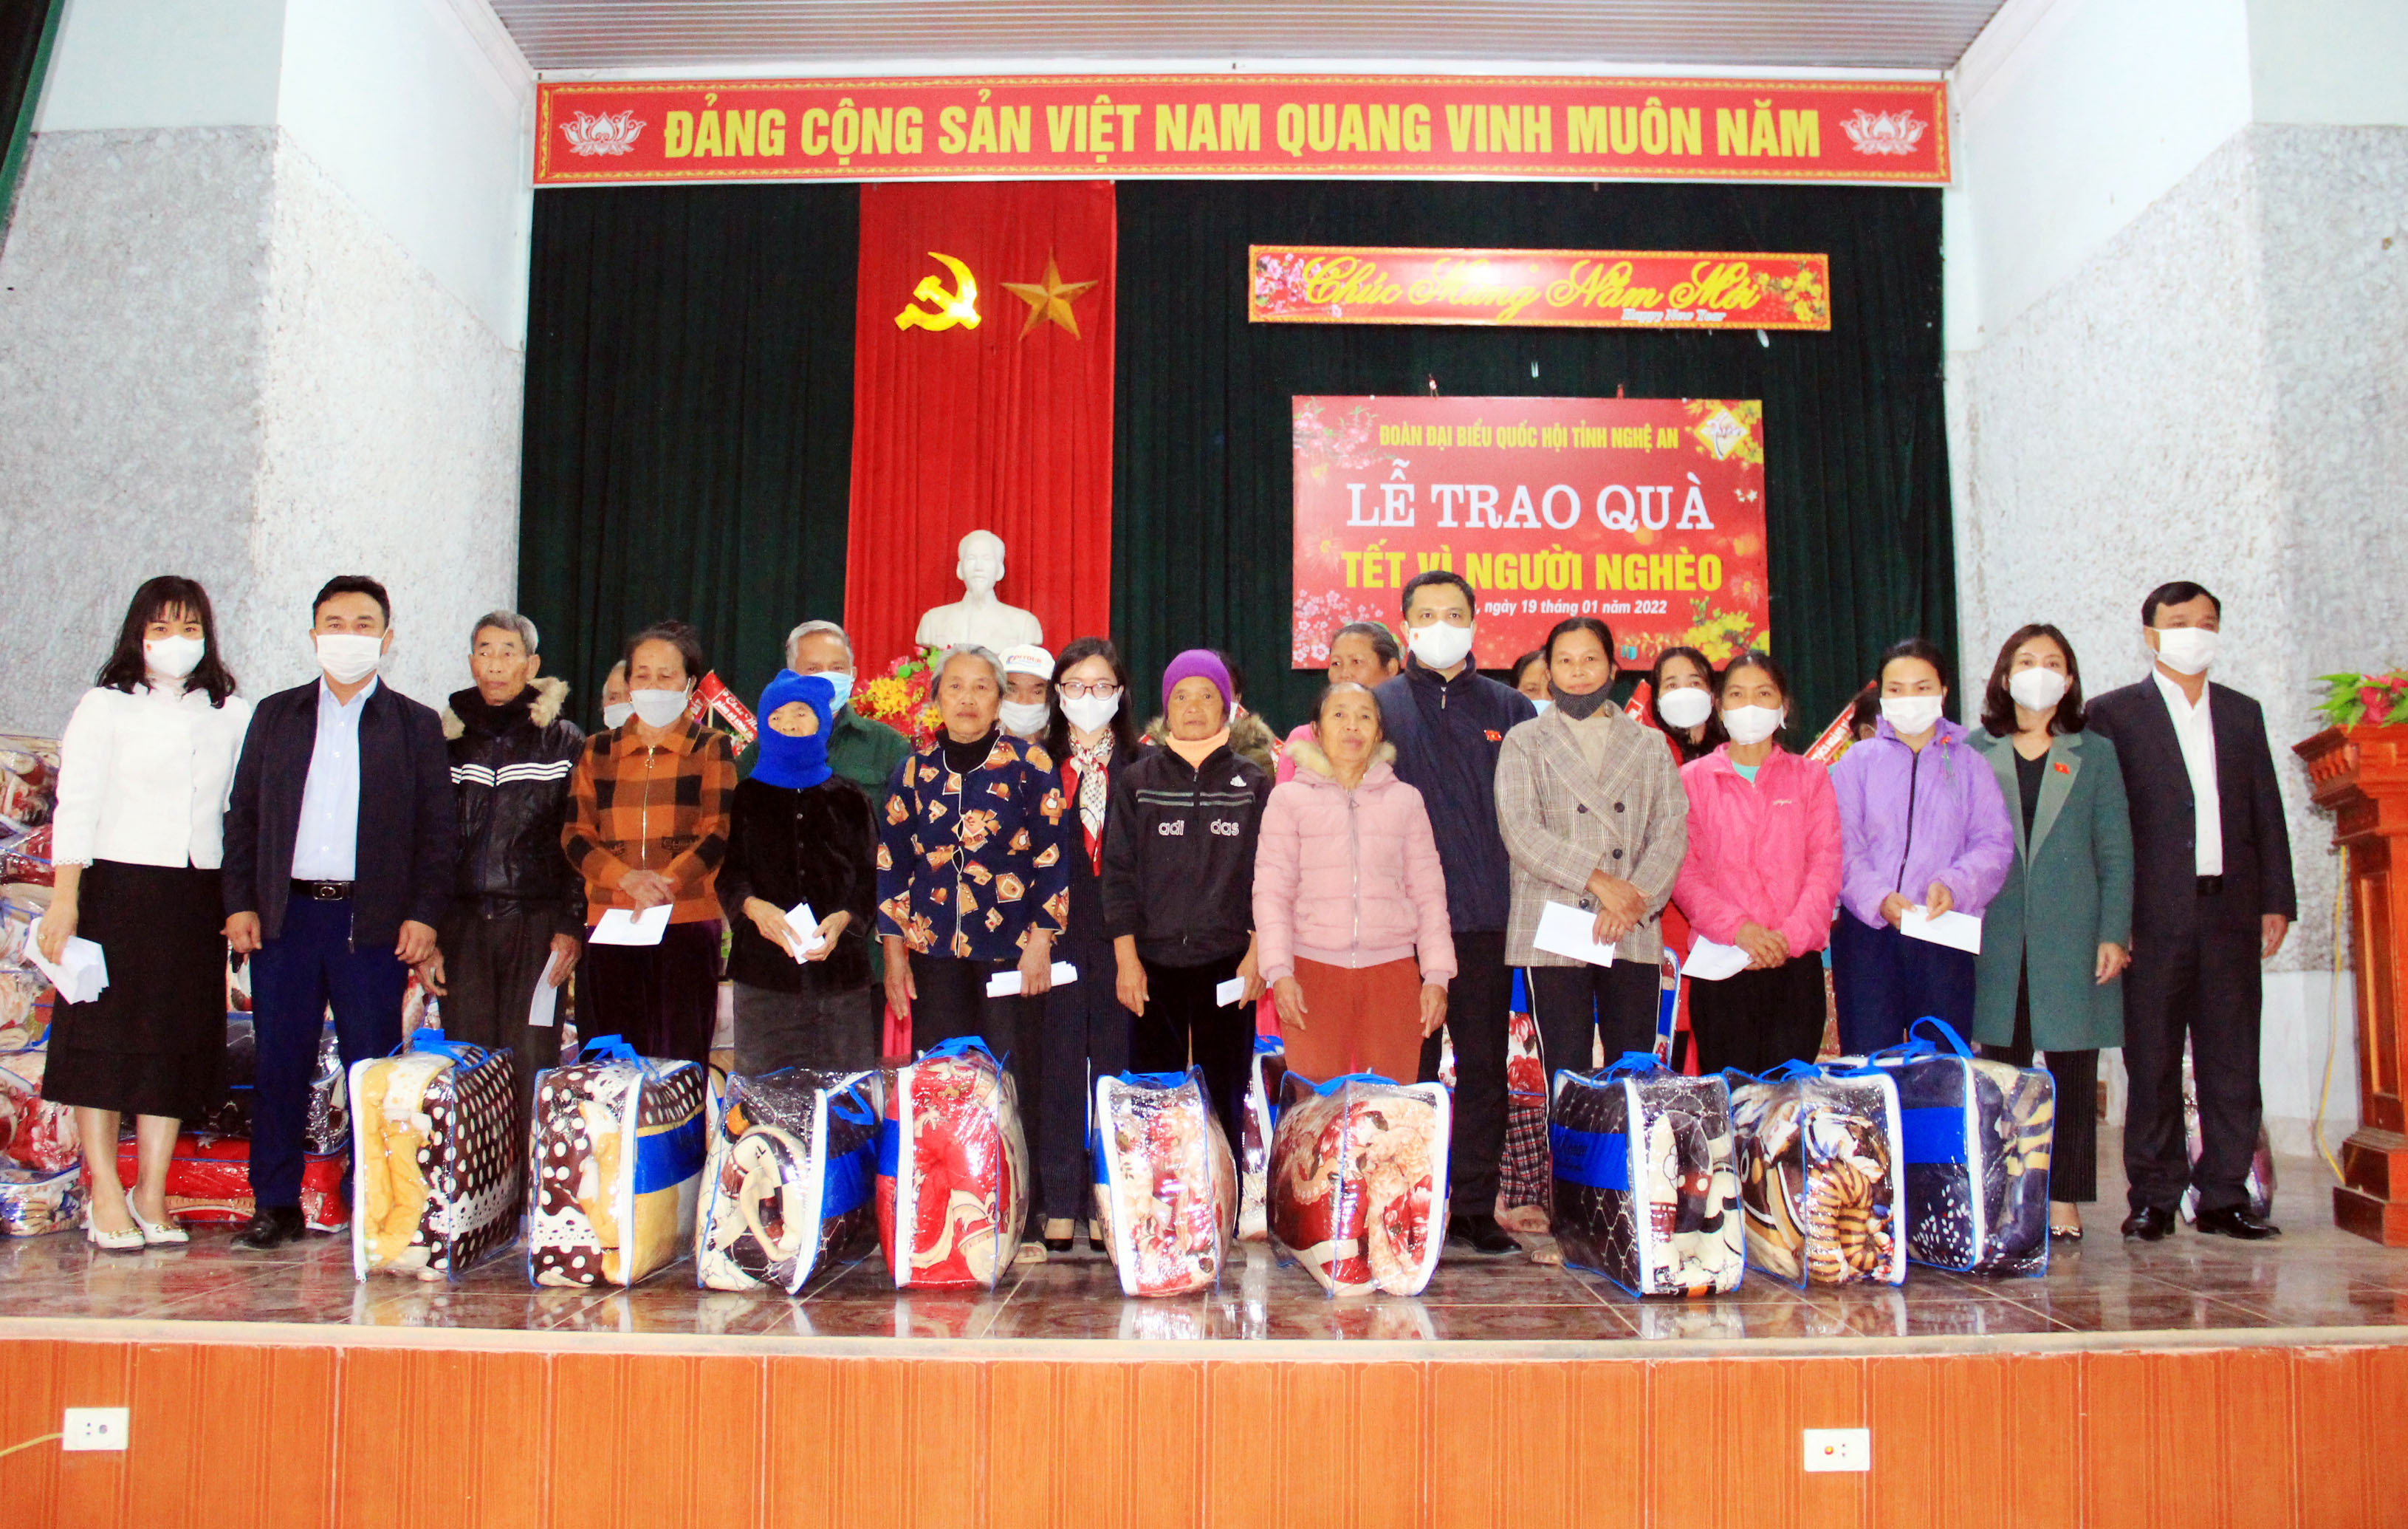 Đoàn công tác tặng quà tết cho 120 hộ nghèo tại xã Long Thành (huyện Yên Thành). Ảnh: Thanh Quỳnh